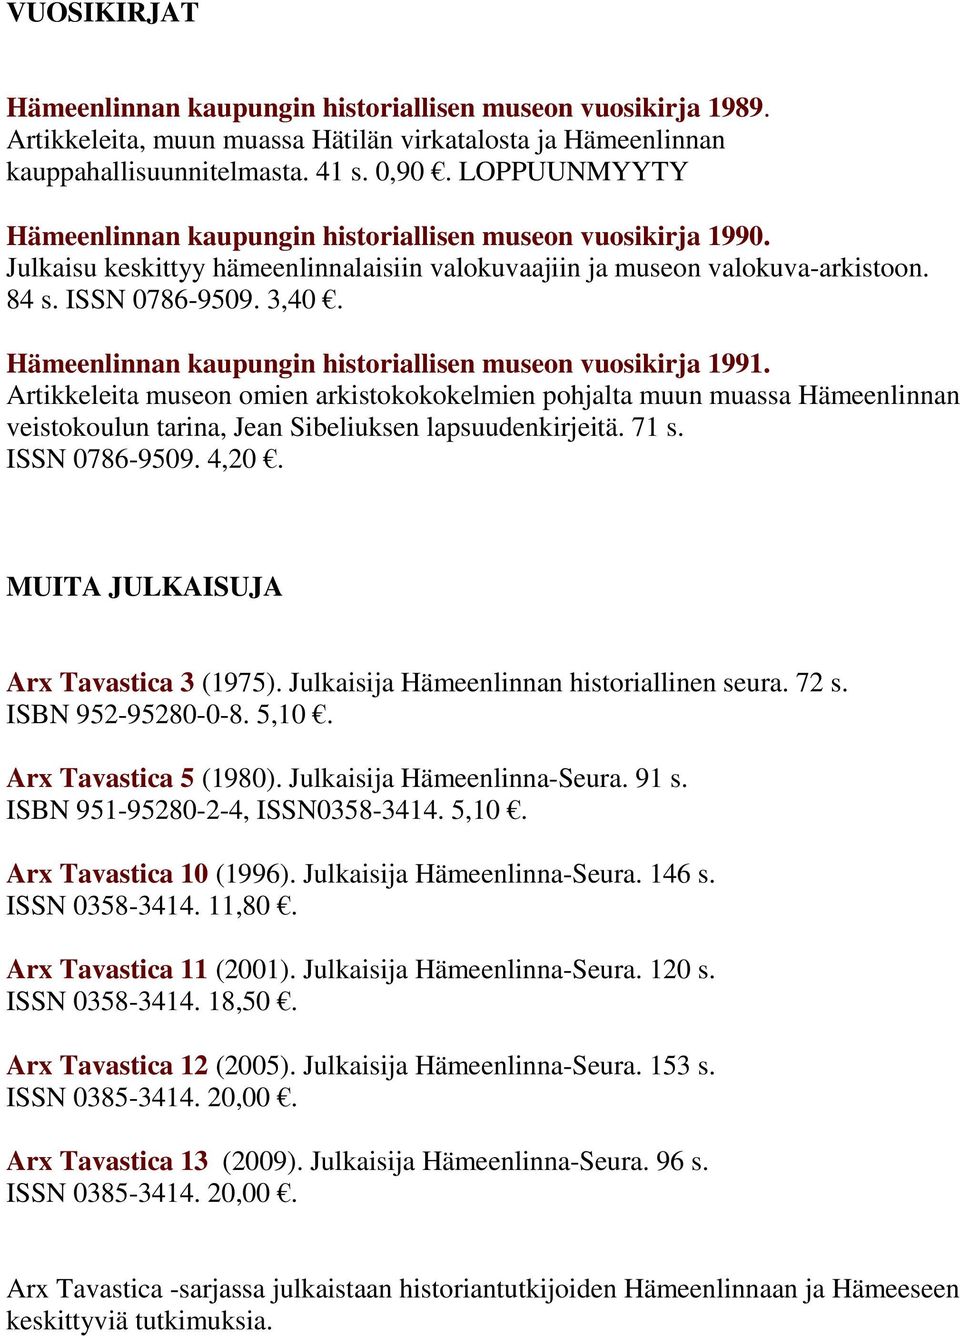 Hämeenlinnan kaupungin historiallisen museon vuosikirja 1991. Artikkeleita museon omien arkistokokokelmien pohjalta muun muassa Hämeenlinnan veistokoulun tarina, Jean Sibeliuksen lapsuudenkirjeitä.